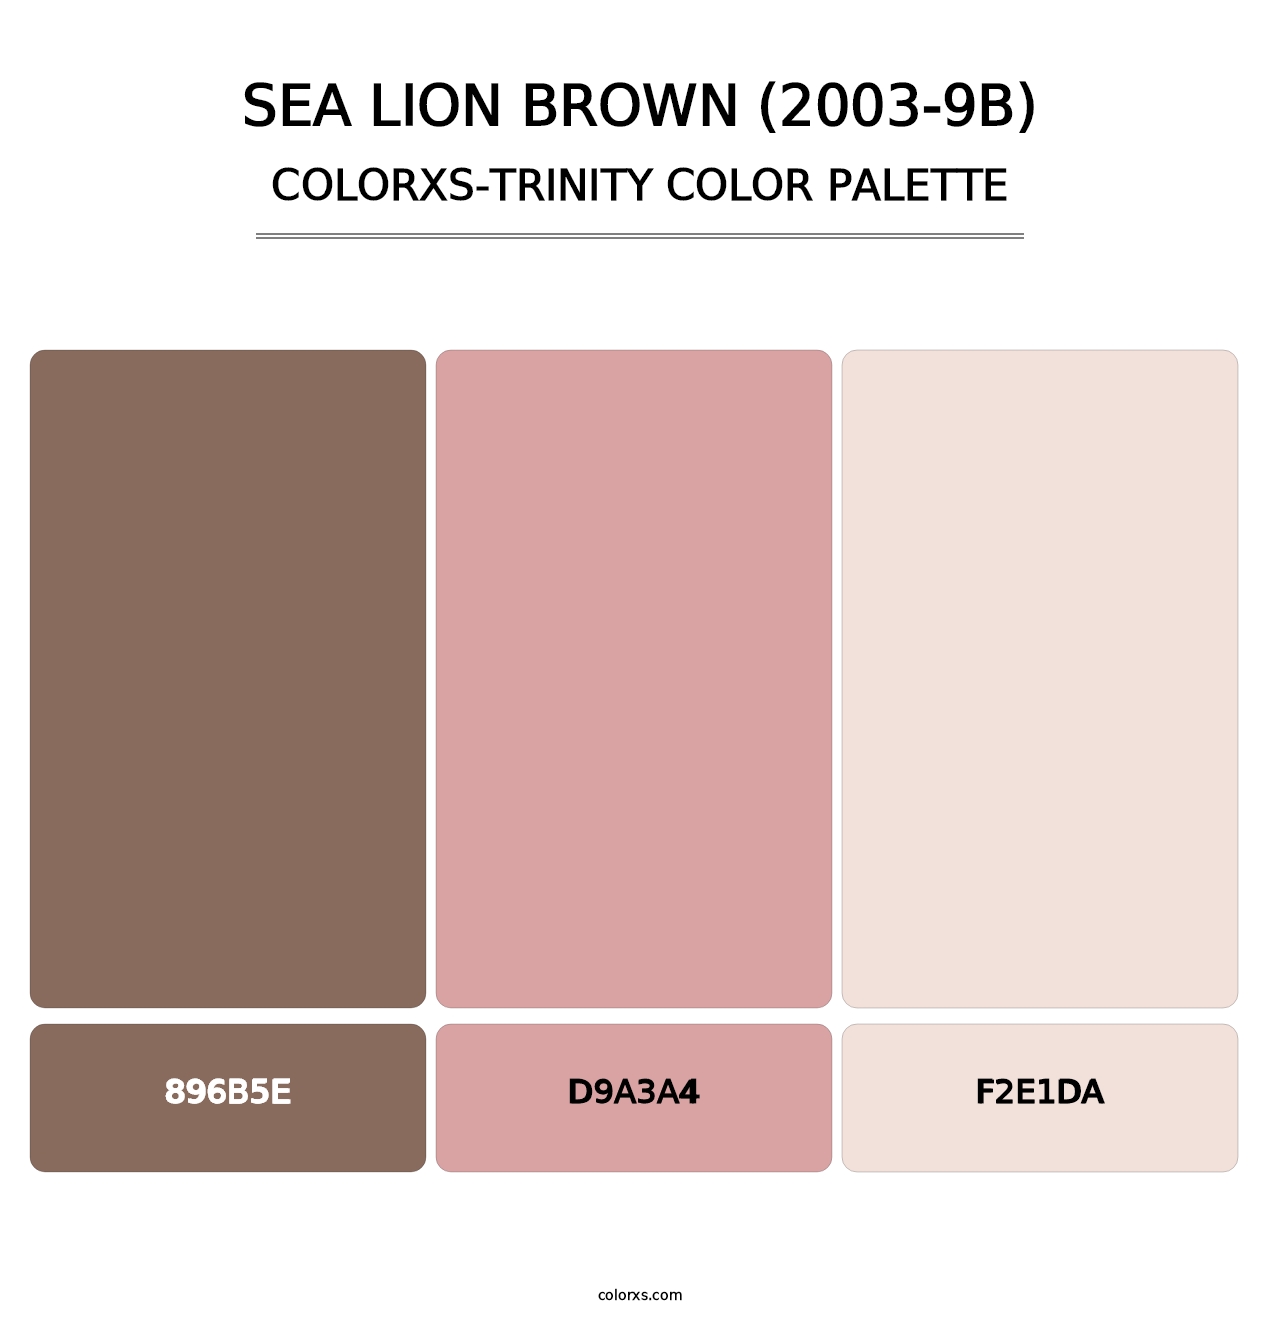 Sea Lion Brown (2003-9B) - Colorxs Trinity Palette